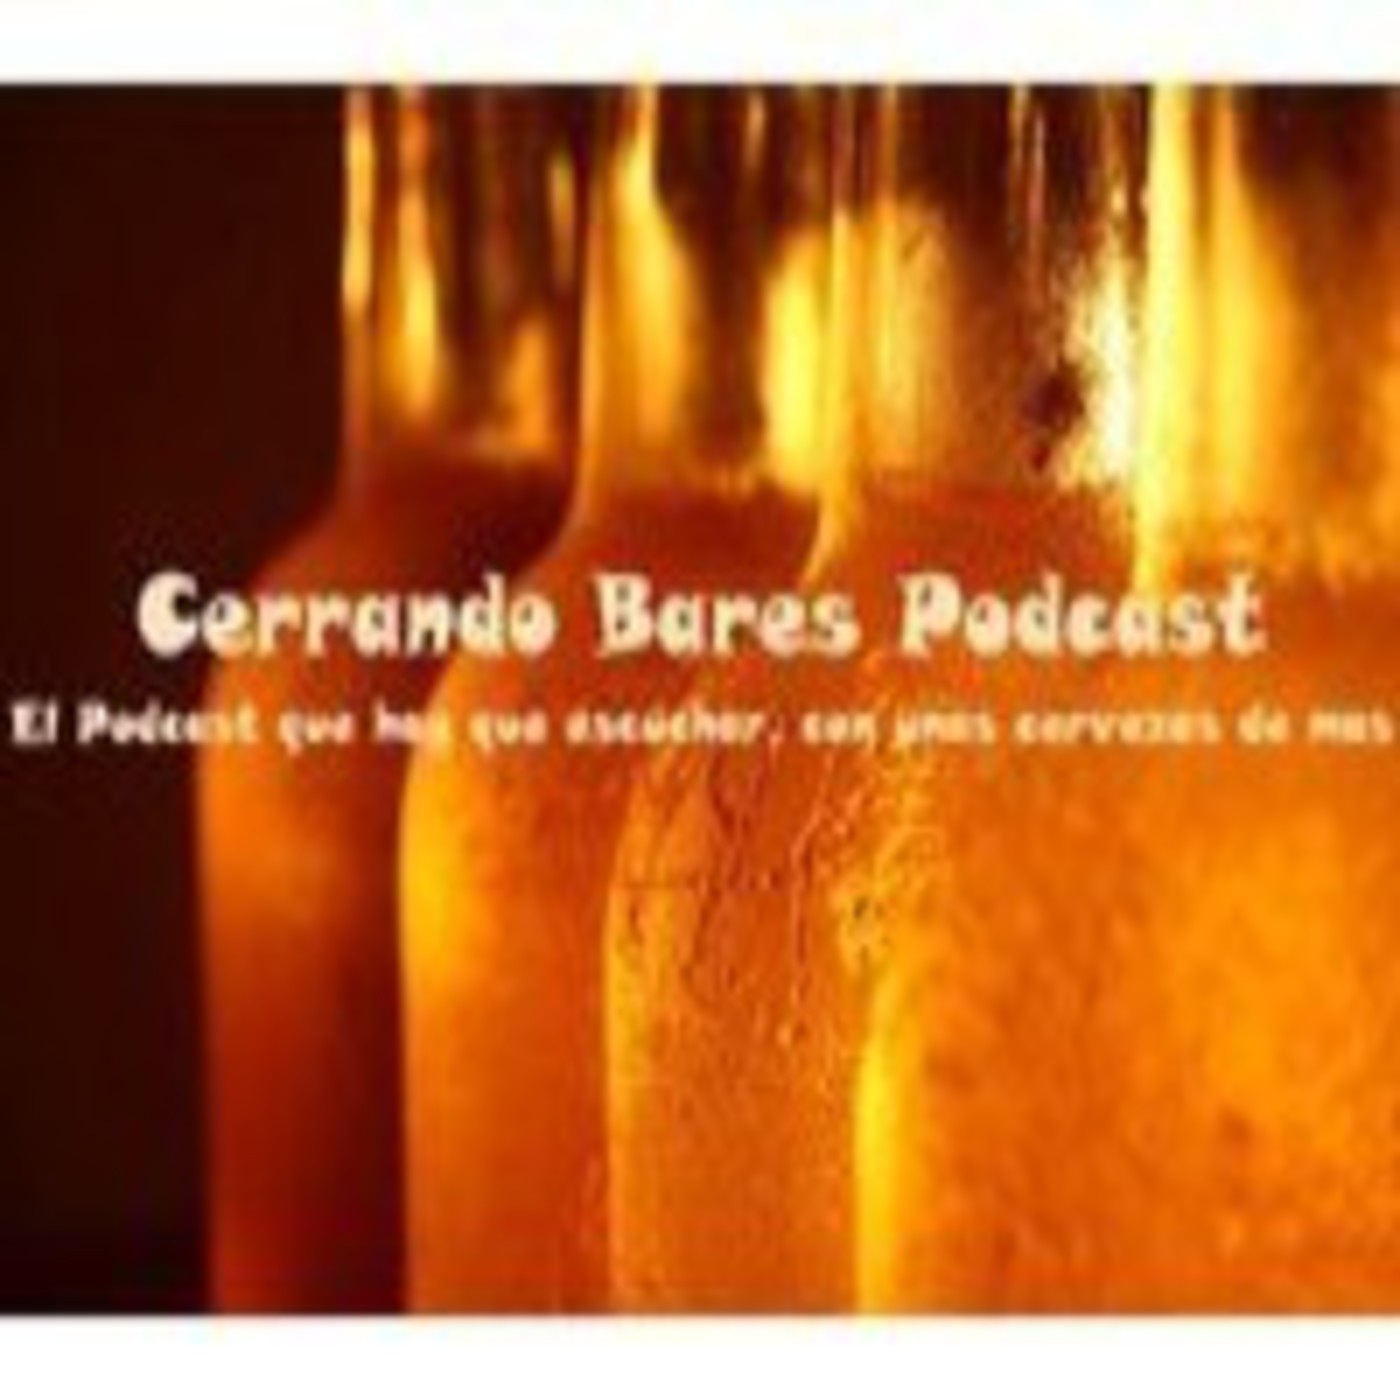 Podcast CerrandoBares